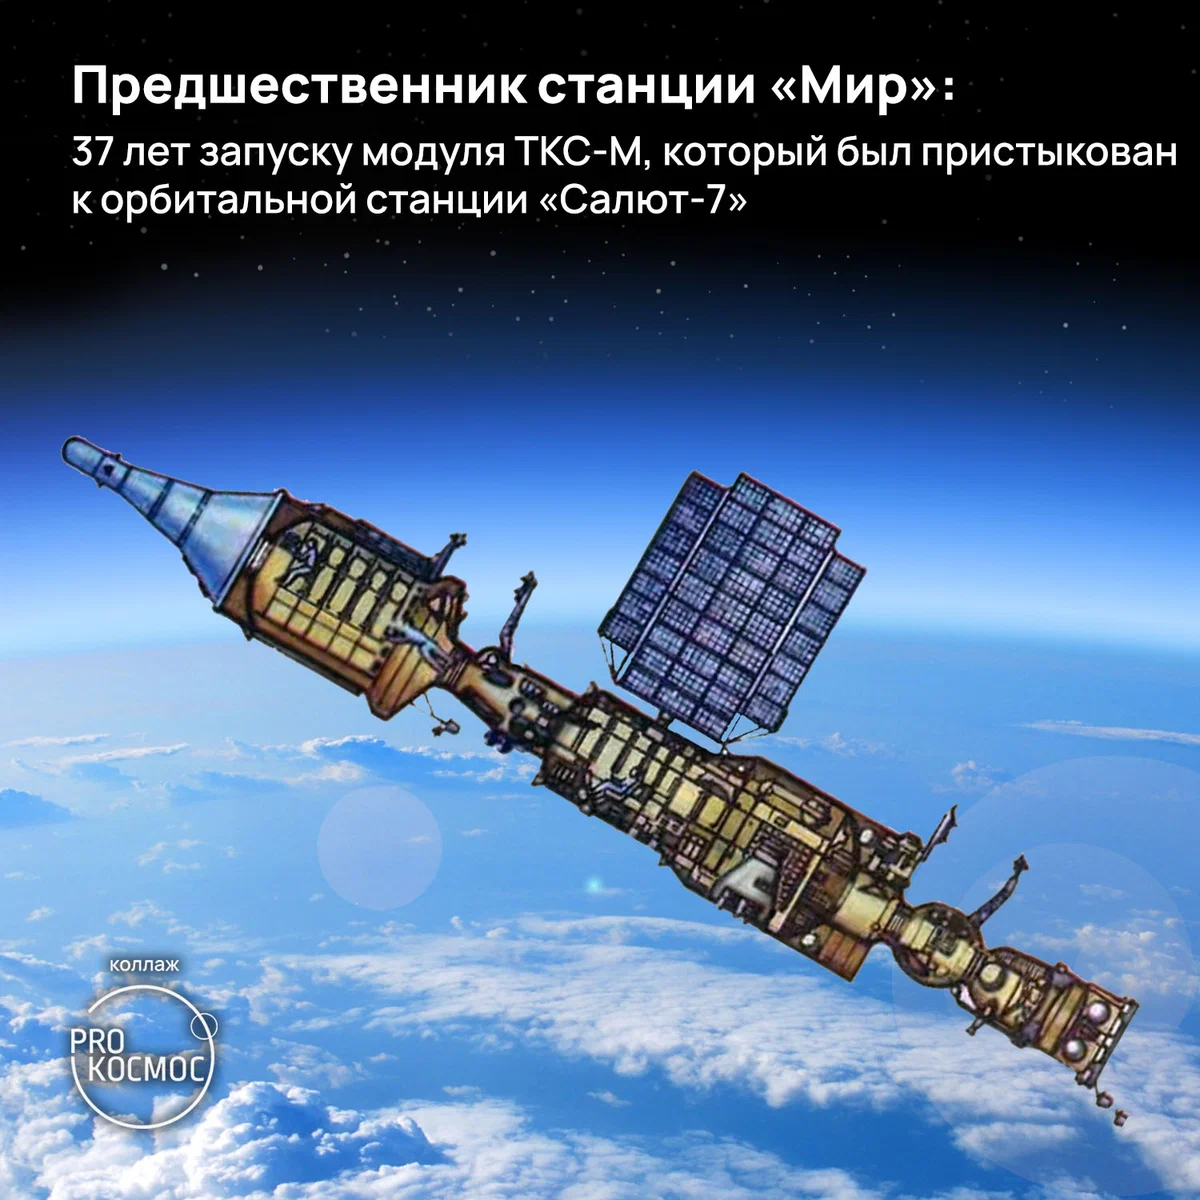 Станция салют 7 1985 год. Станция салют 7. Космический корабль. Космические аппараты. Орбитальная станция салют-7.